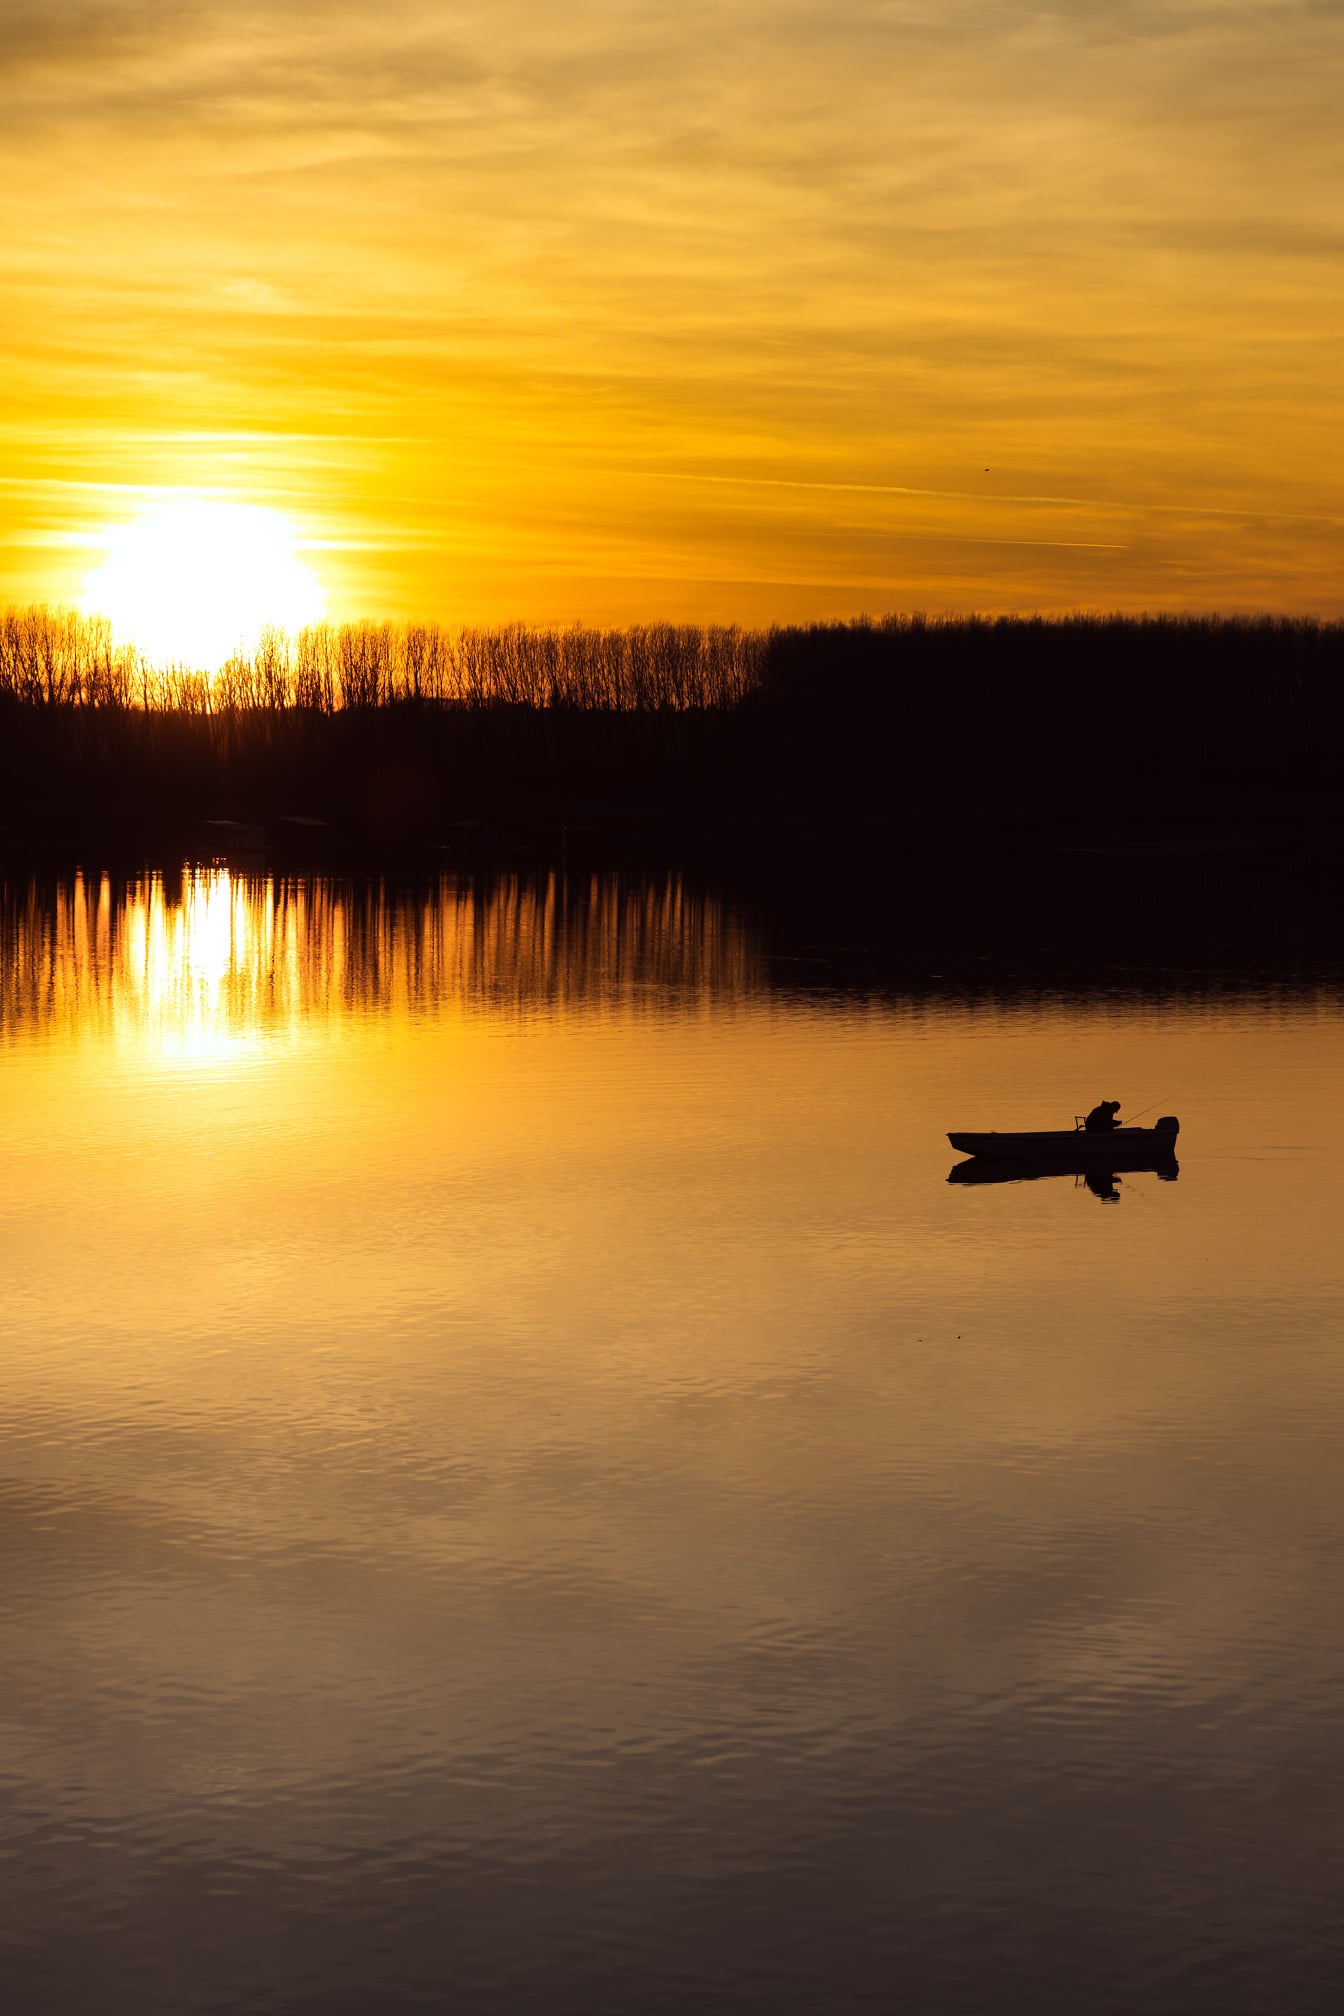 Amanecer brillante sobre la orilla del lago con la silueta del barco de pesca